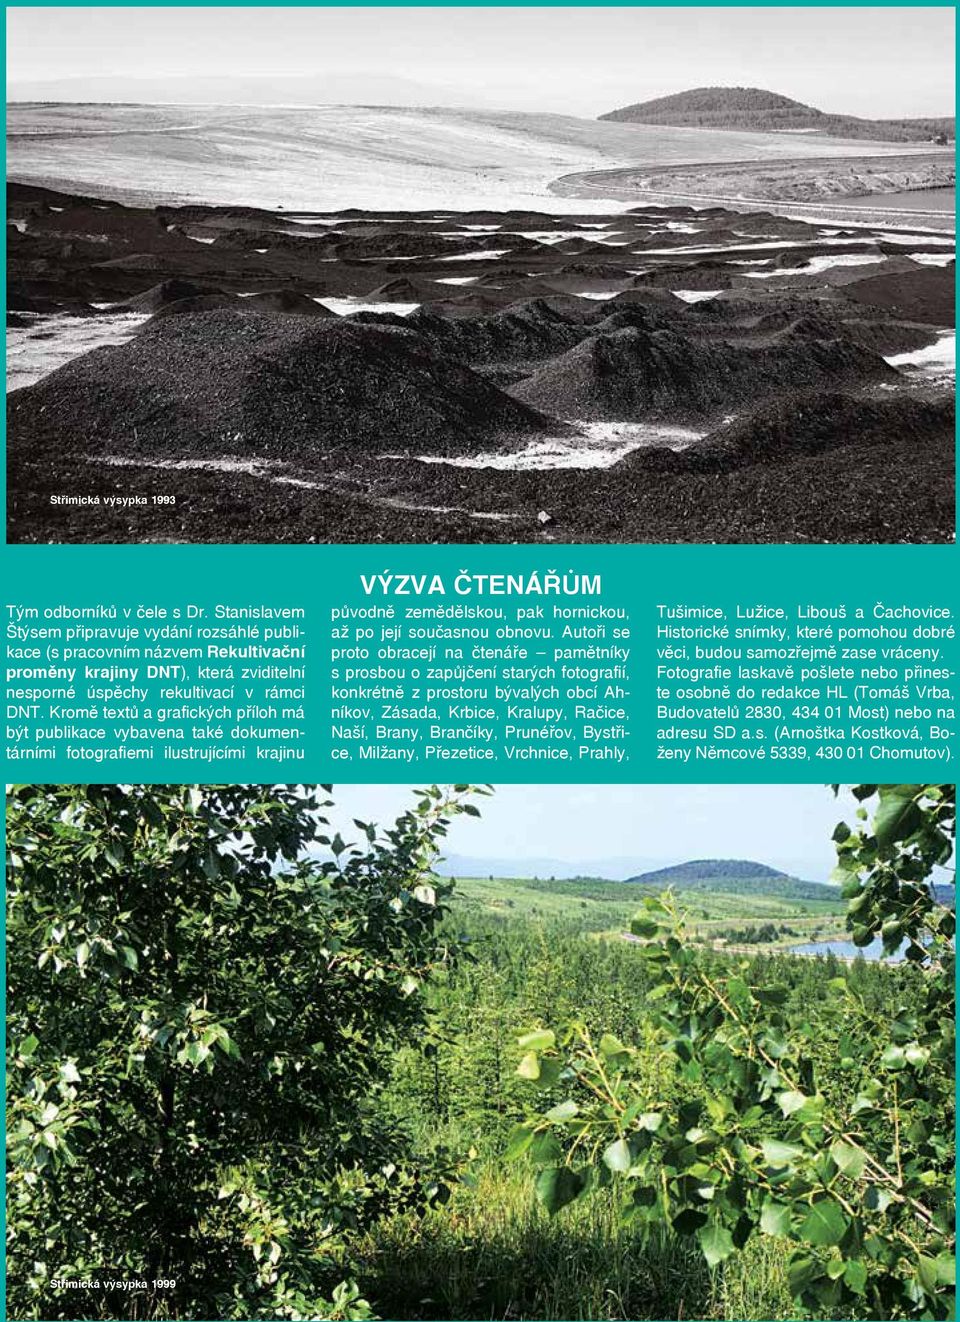 Kromě textů a grafických příloh má být publikace vybavena také dokumentárními fotografiemi ilustrujícími krajinu VÝZVA ČTENÁŘŮM původně zemědělskou, pak hornickou, až po její současnou obnovu.